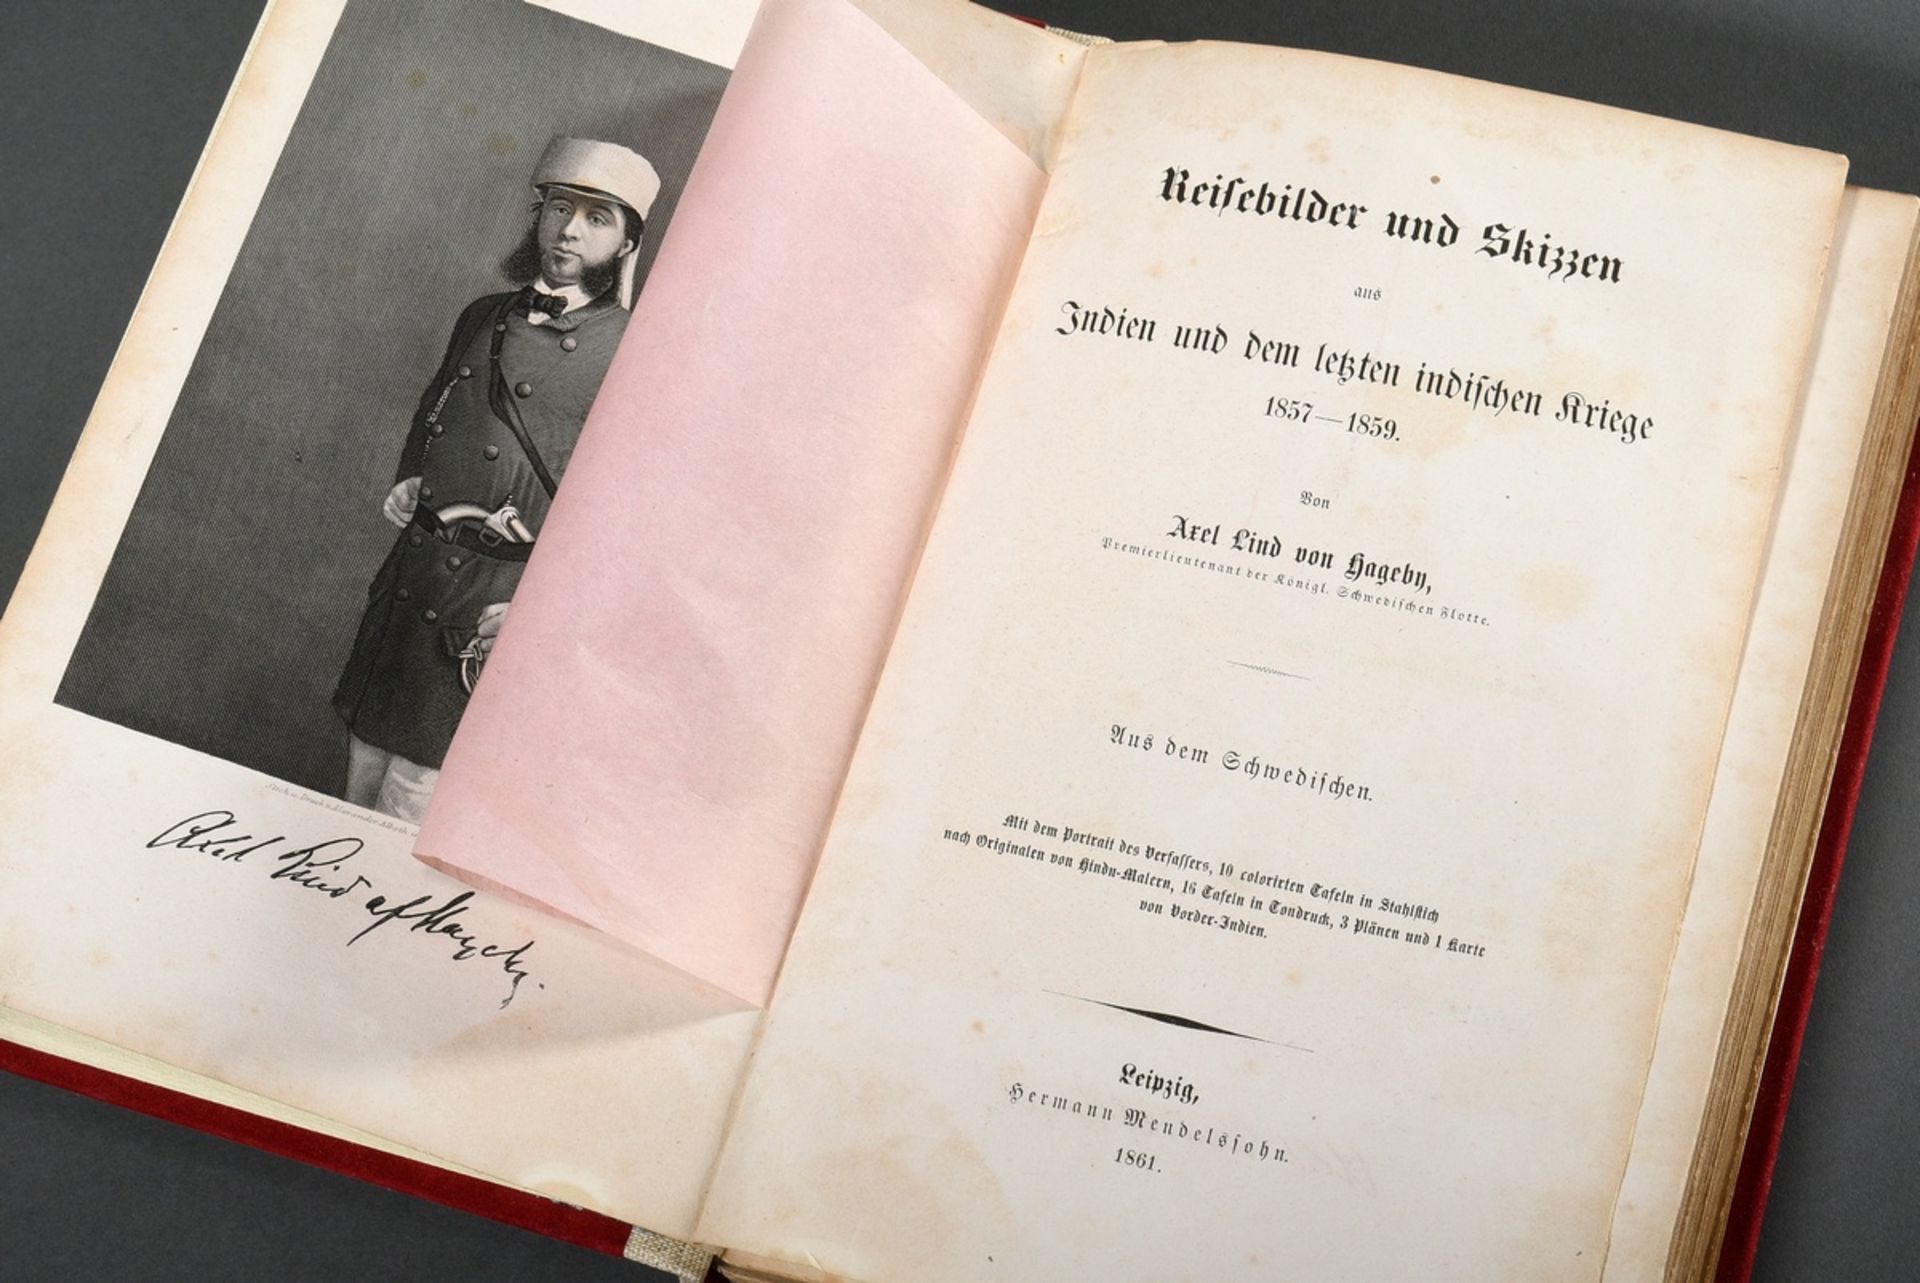 Band Axel Lind von Hageby "Reisebilder und Skizzen aus Indien und dem letzten indischen Kriege 1857